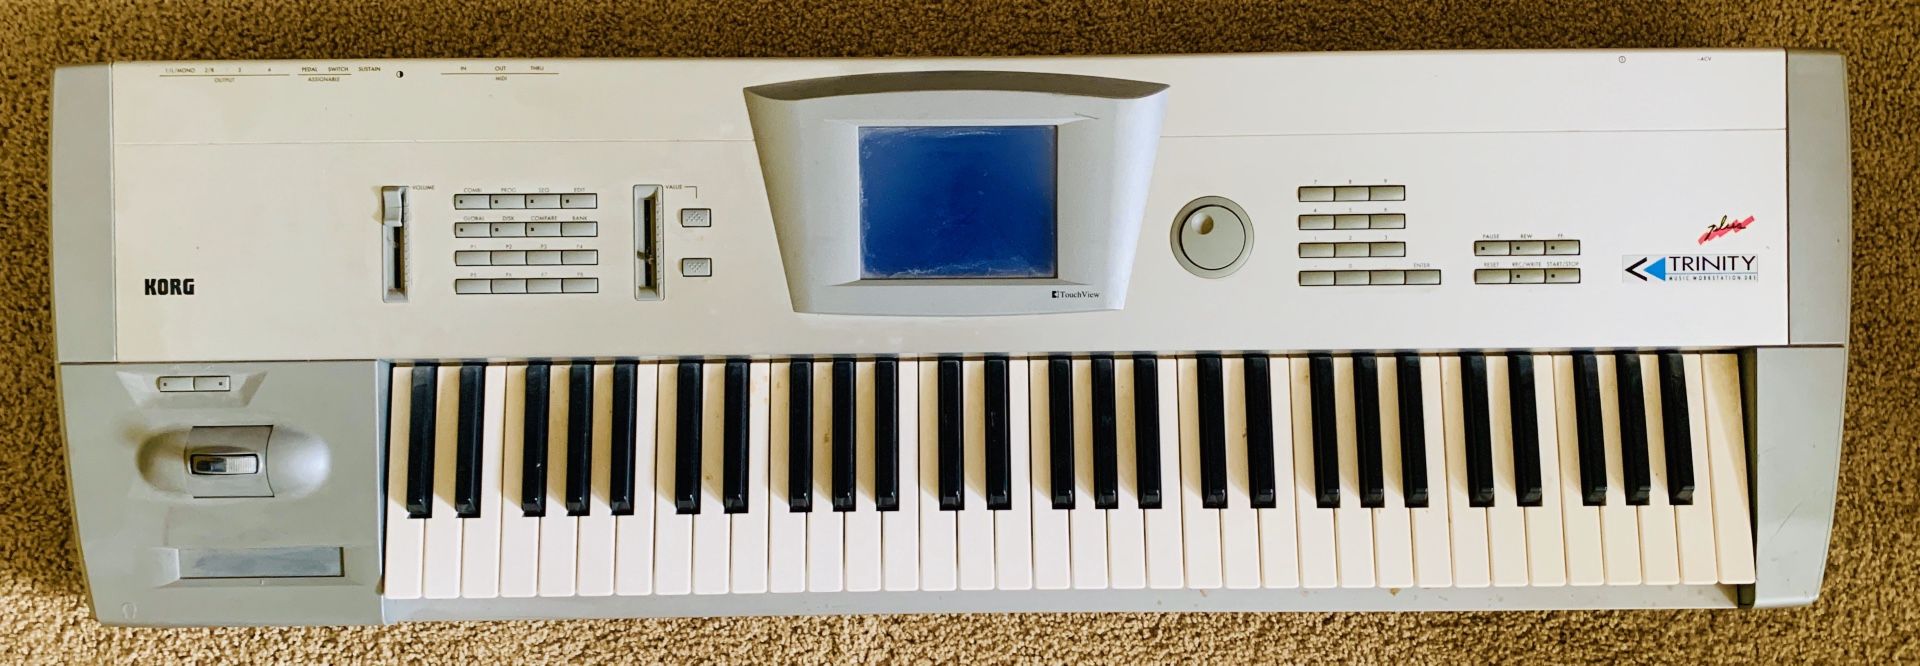 KORG TRINITY PLUS MUSIC WORKSTATION (Iconic keyboard)